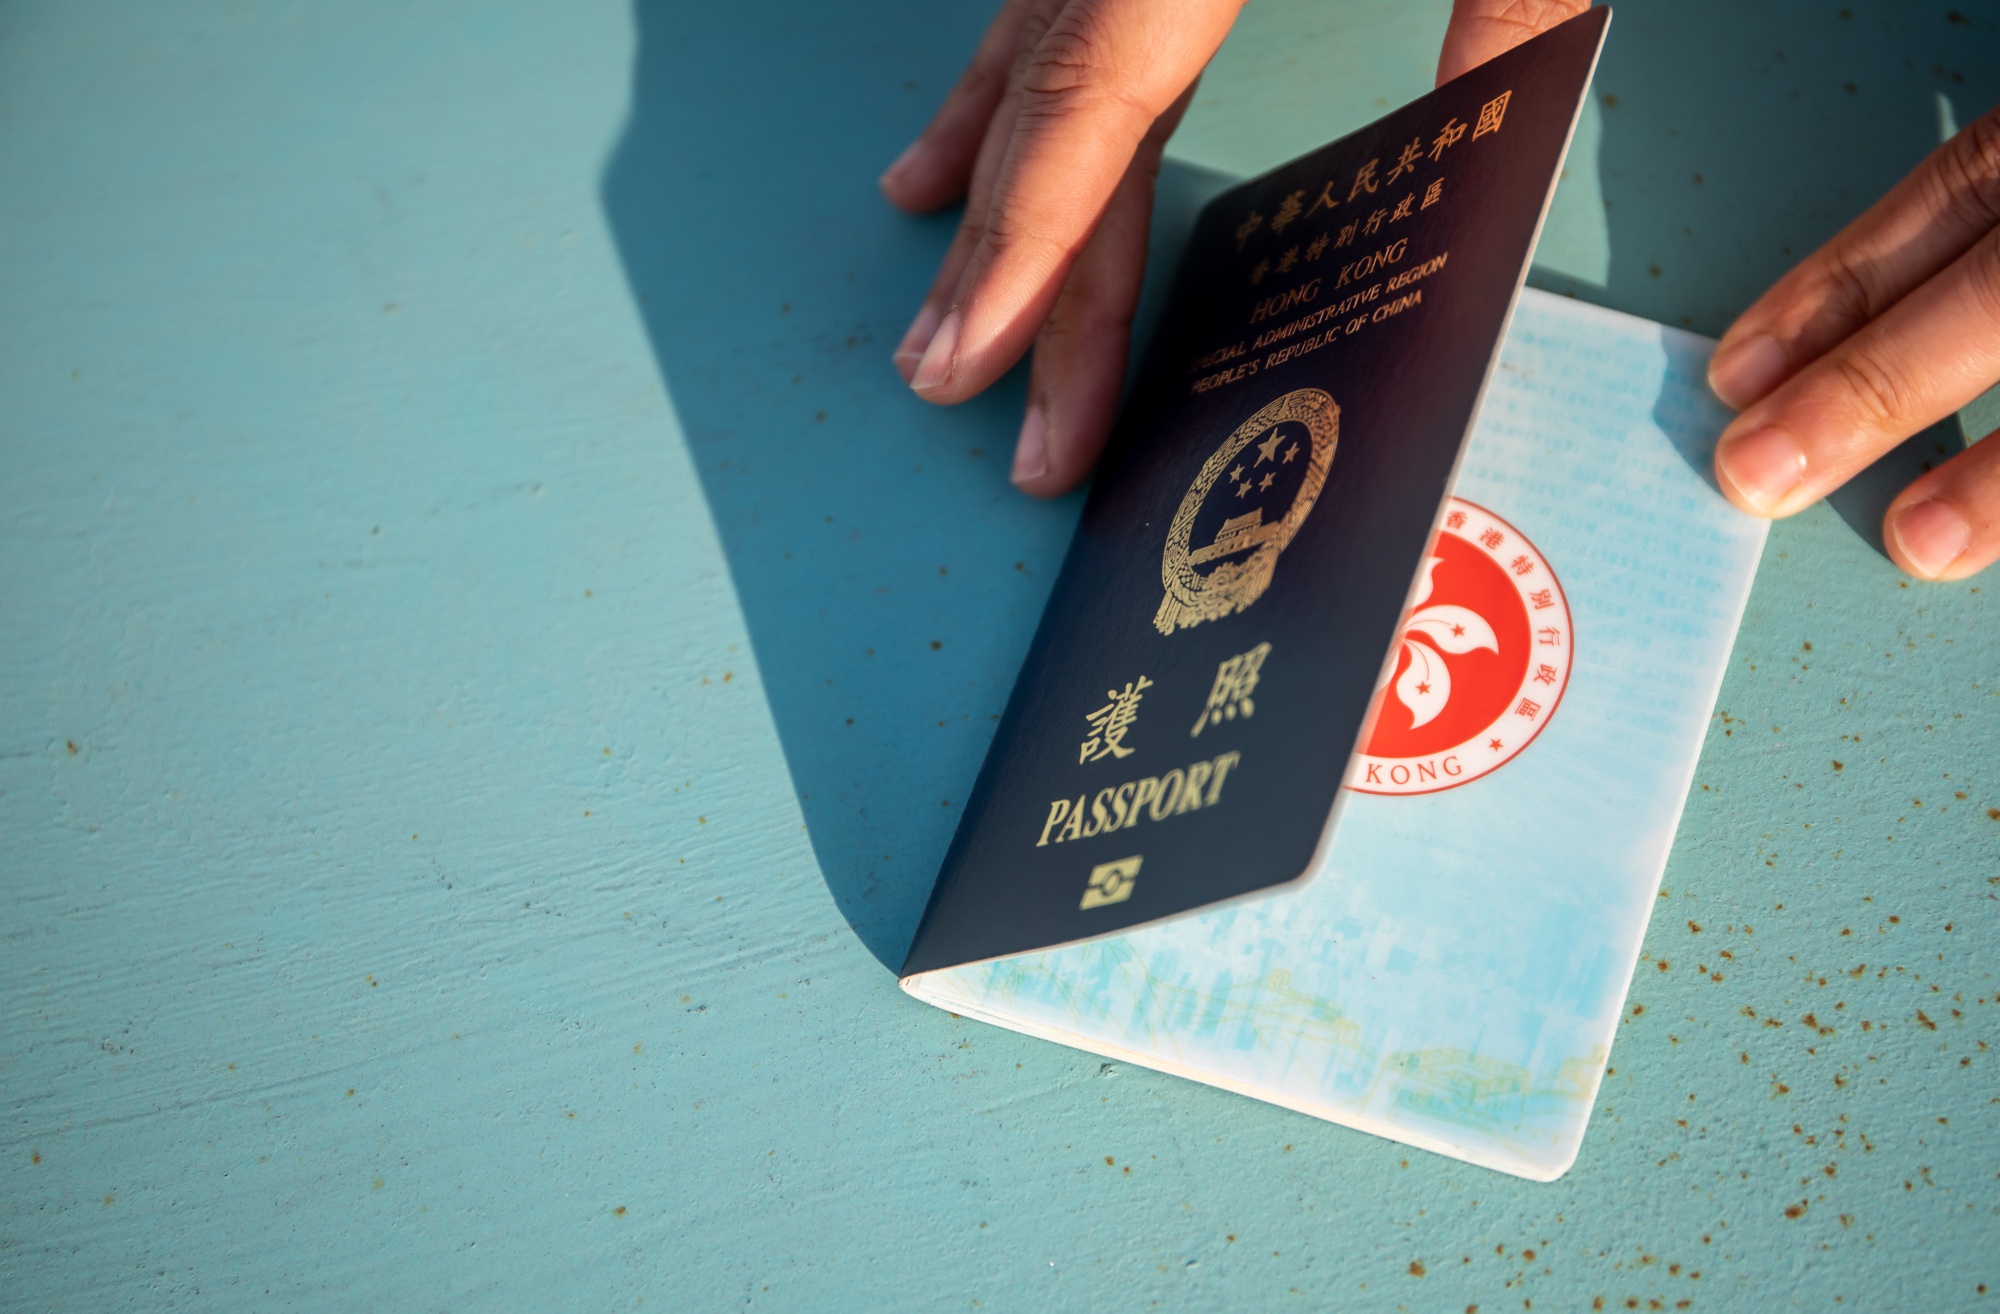 جوازات سفر BNO و HKSAR حيث تتوقع المملكة المتحدة أن يغادر 300000 شخص هونج كونج وينتقلون إلى بريطانيا